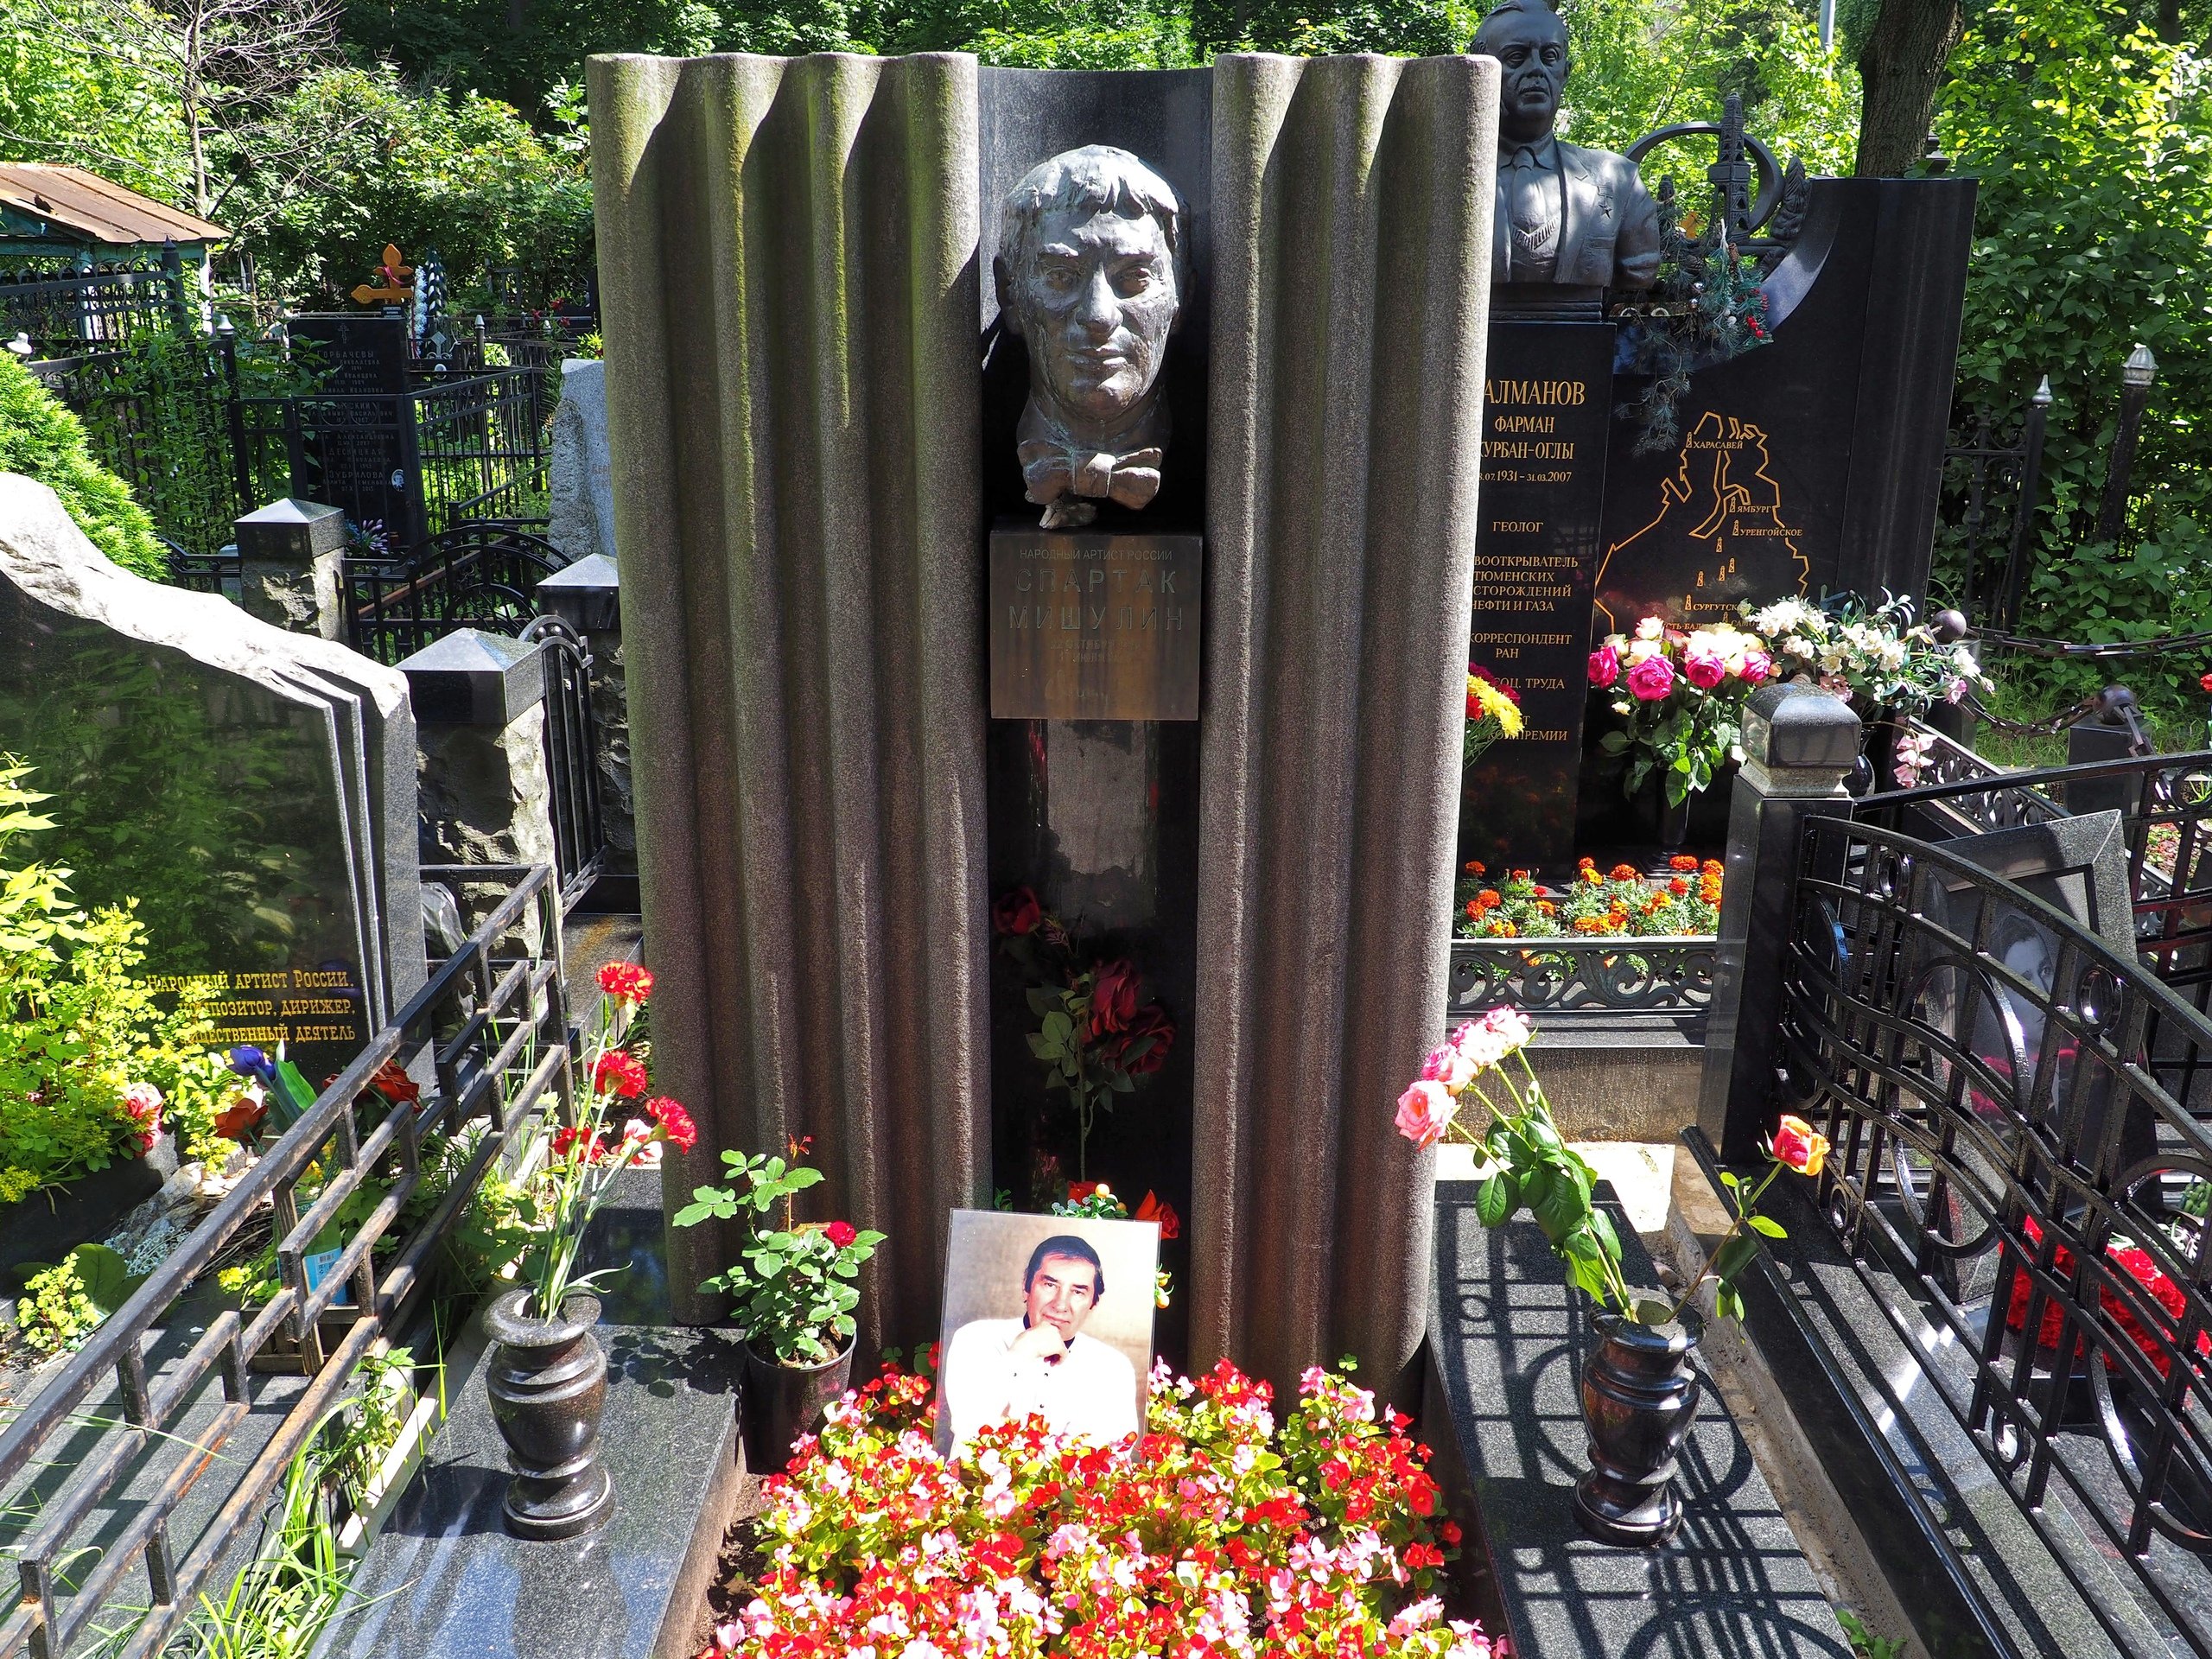 Могила Андрея Миронова на Ваганьковском кладбище